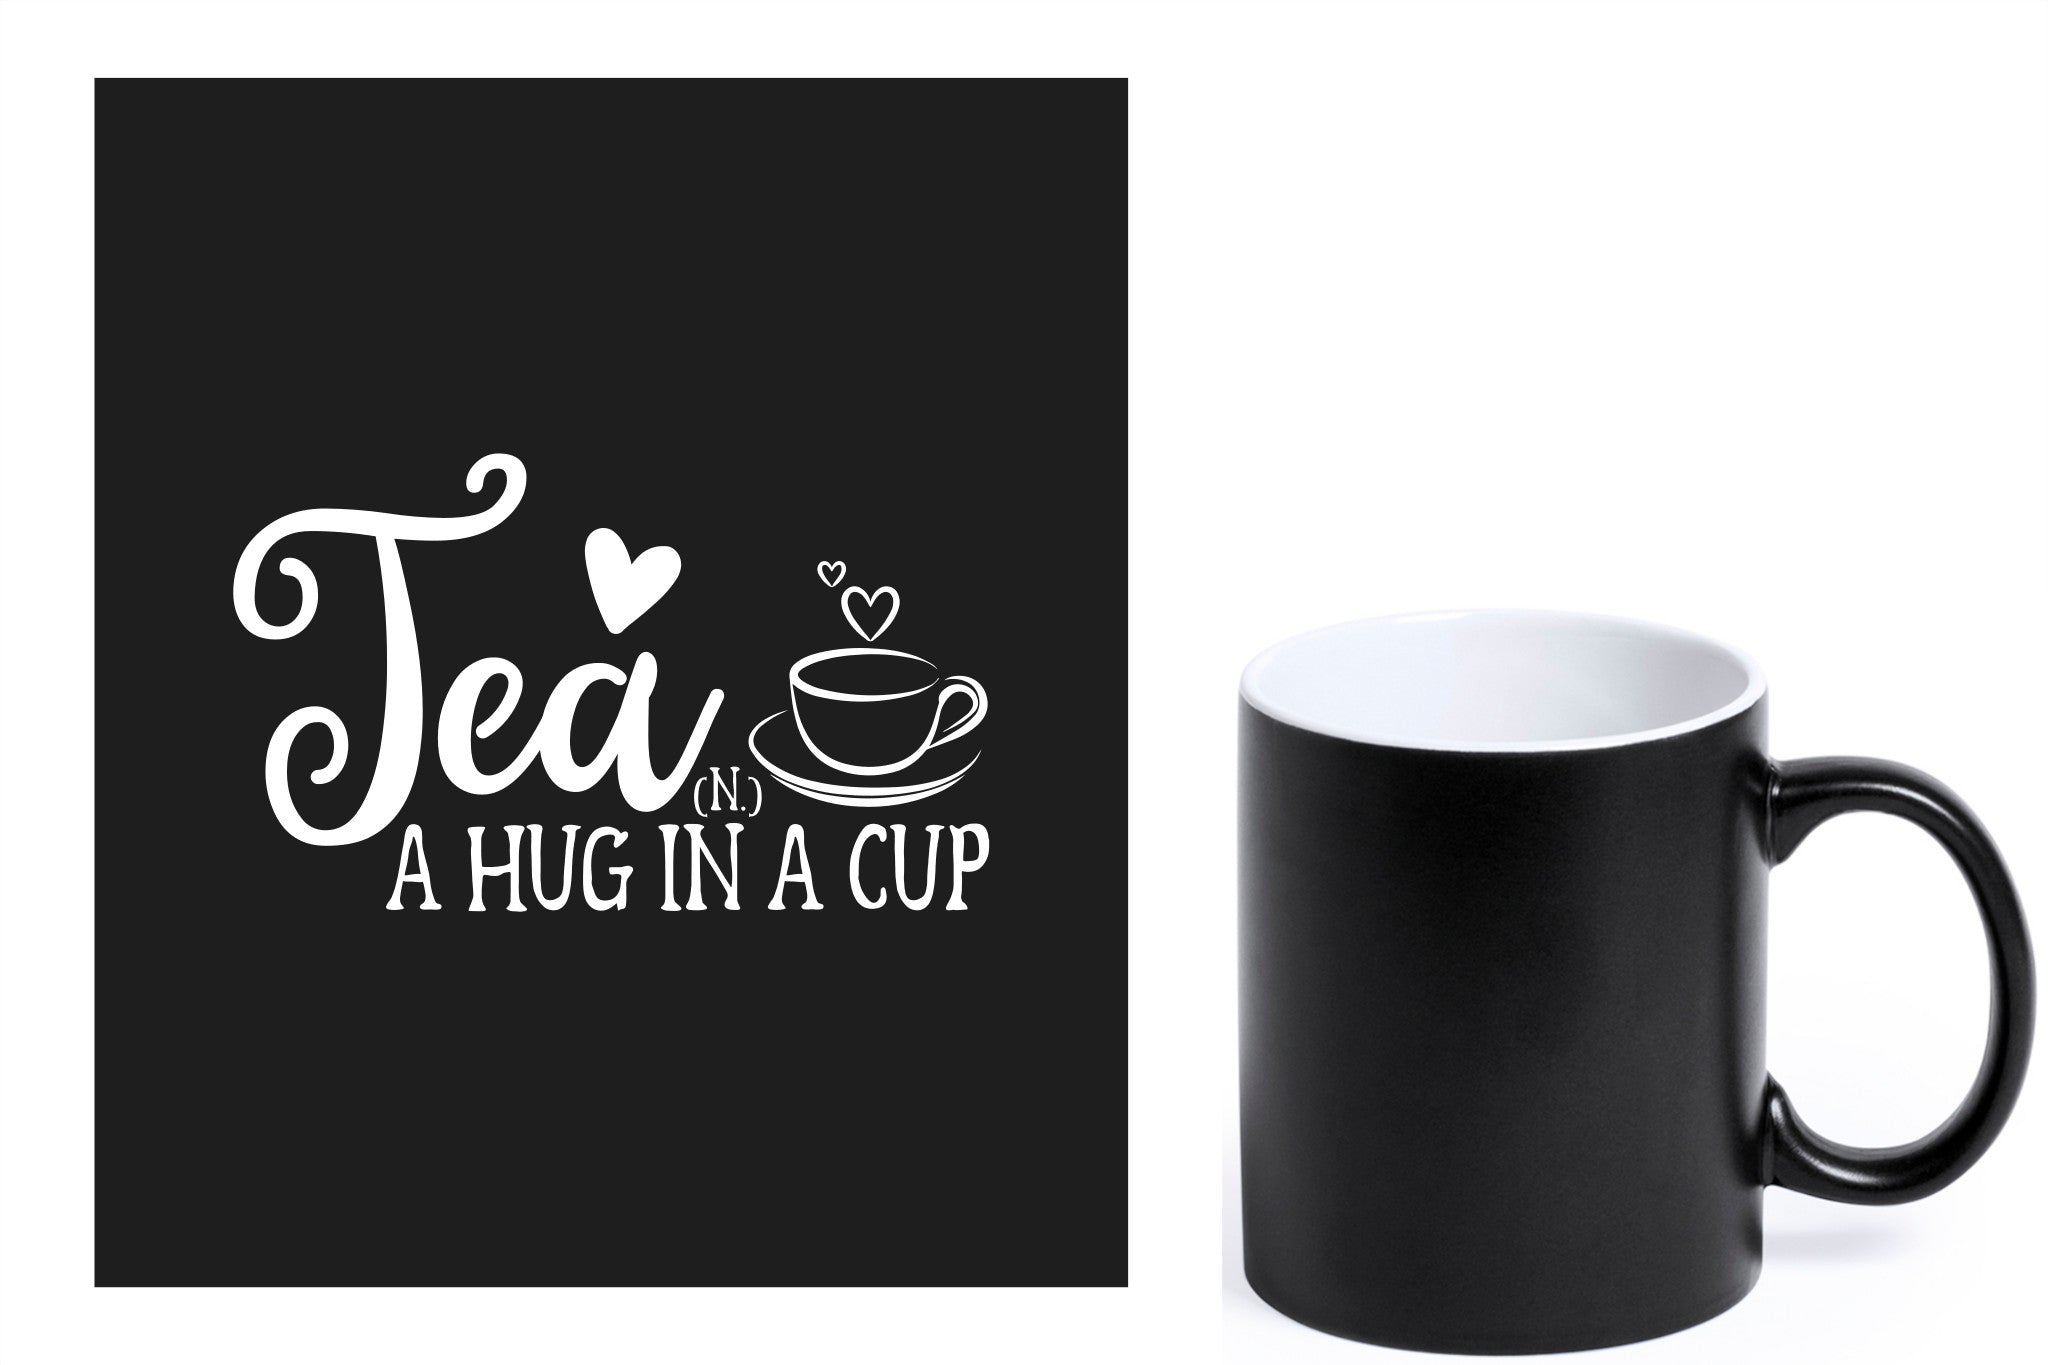 zwarte keramische mok met witte gravure  'Tea and a hug in a cup'.